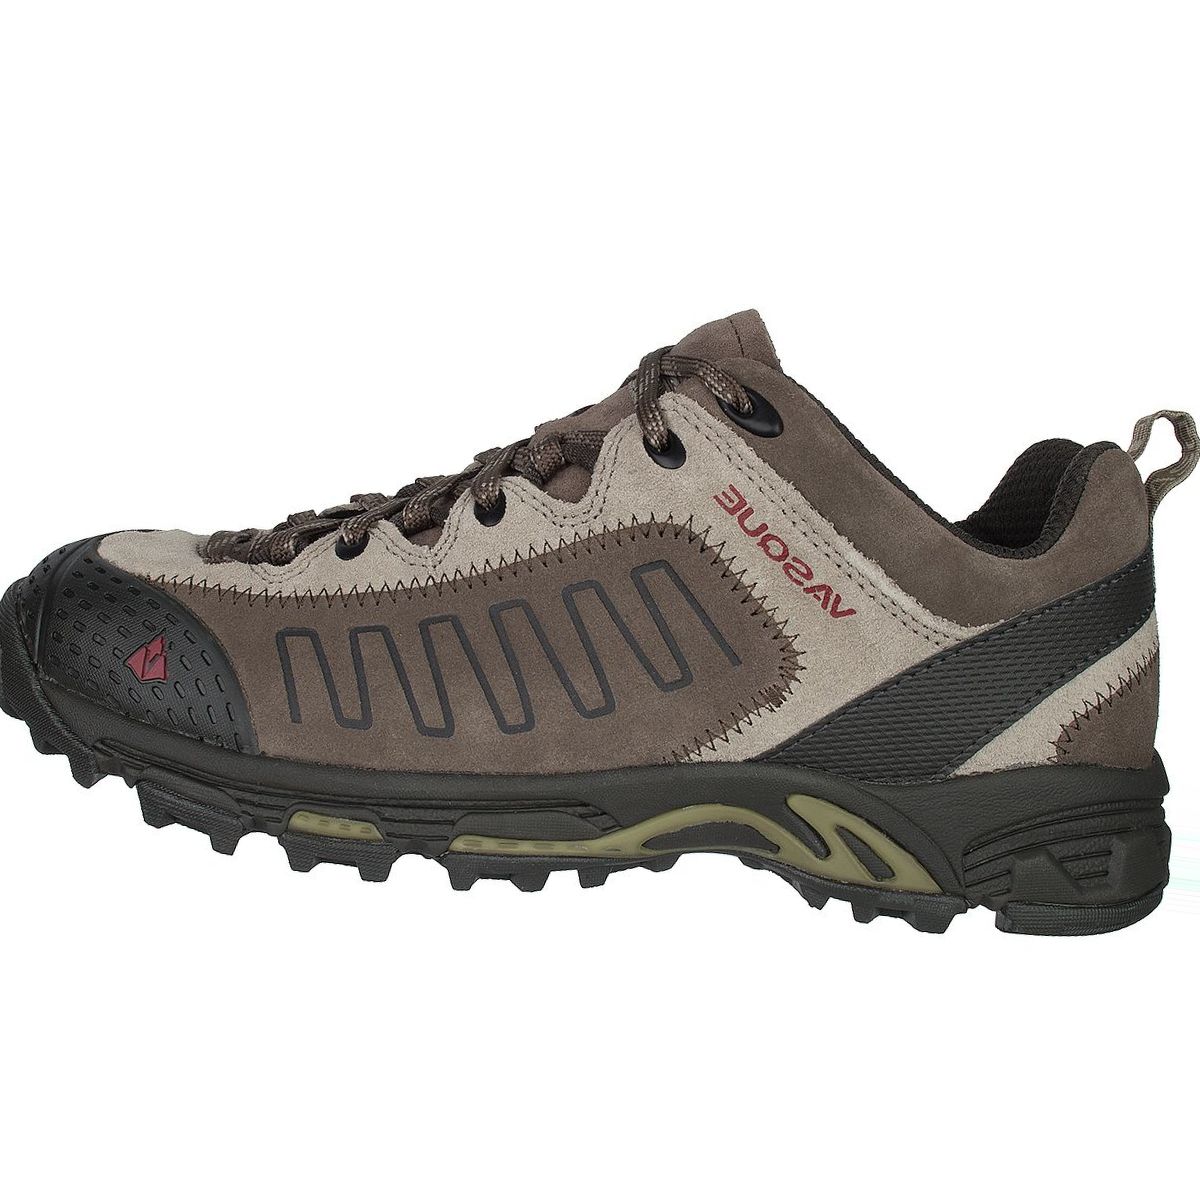 Vasque Juxt Hiking Shoe - Men's